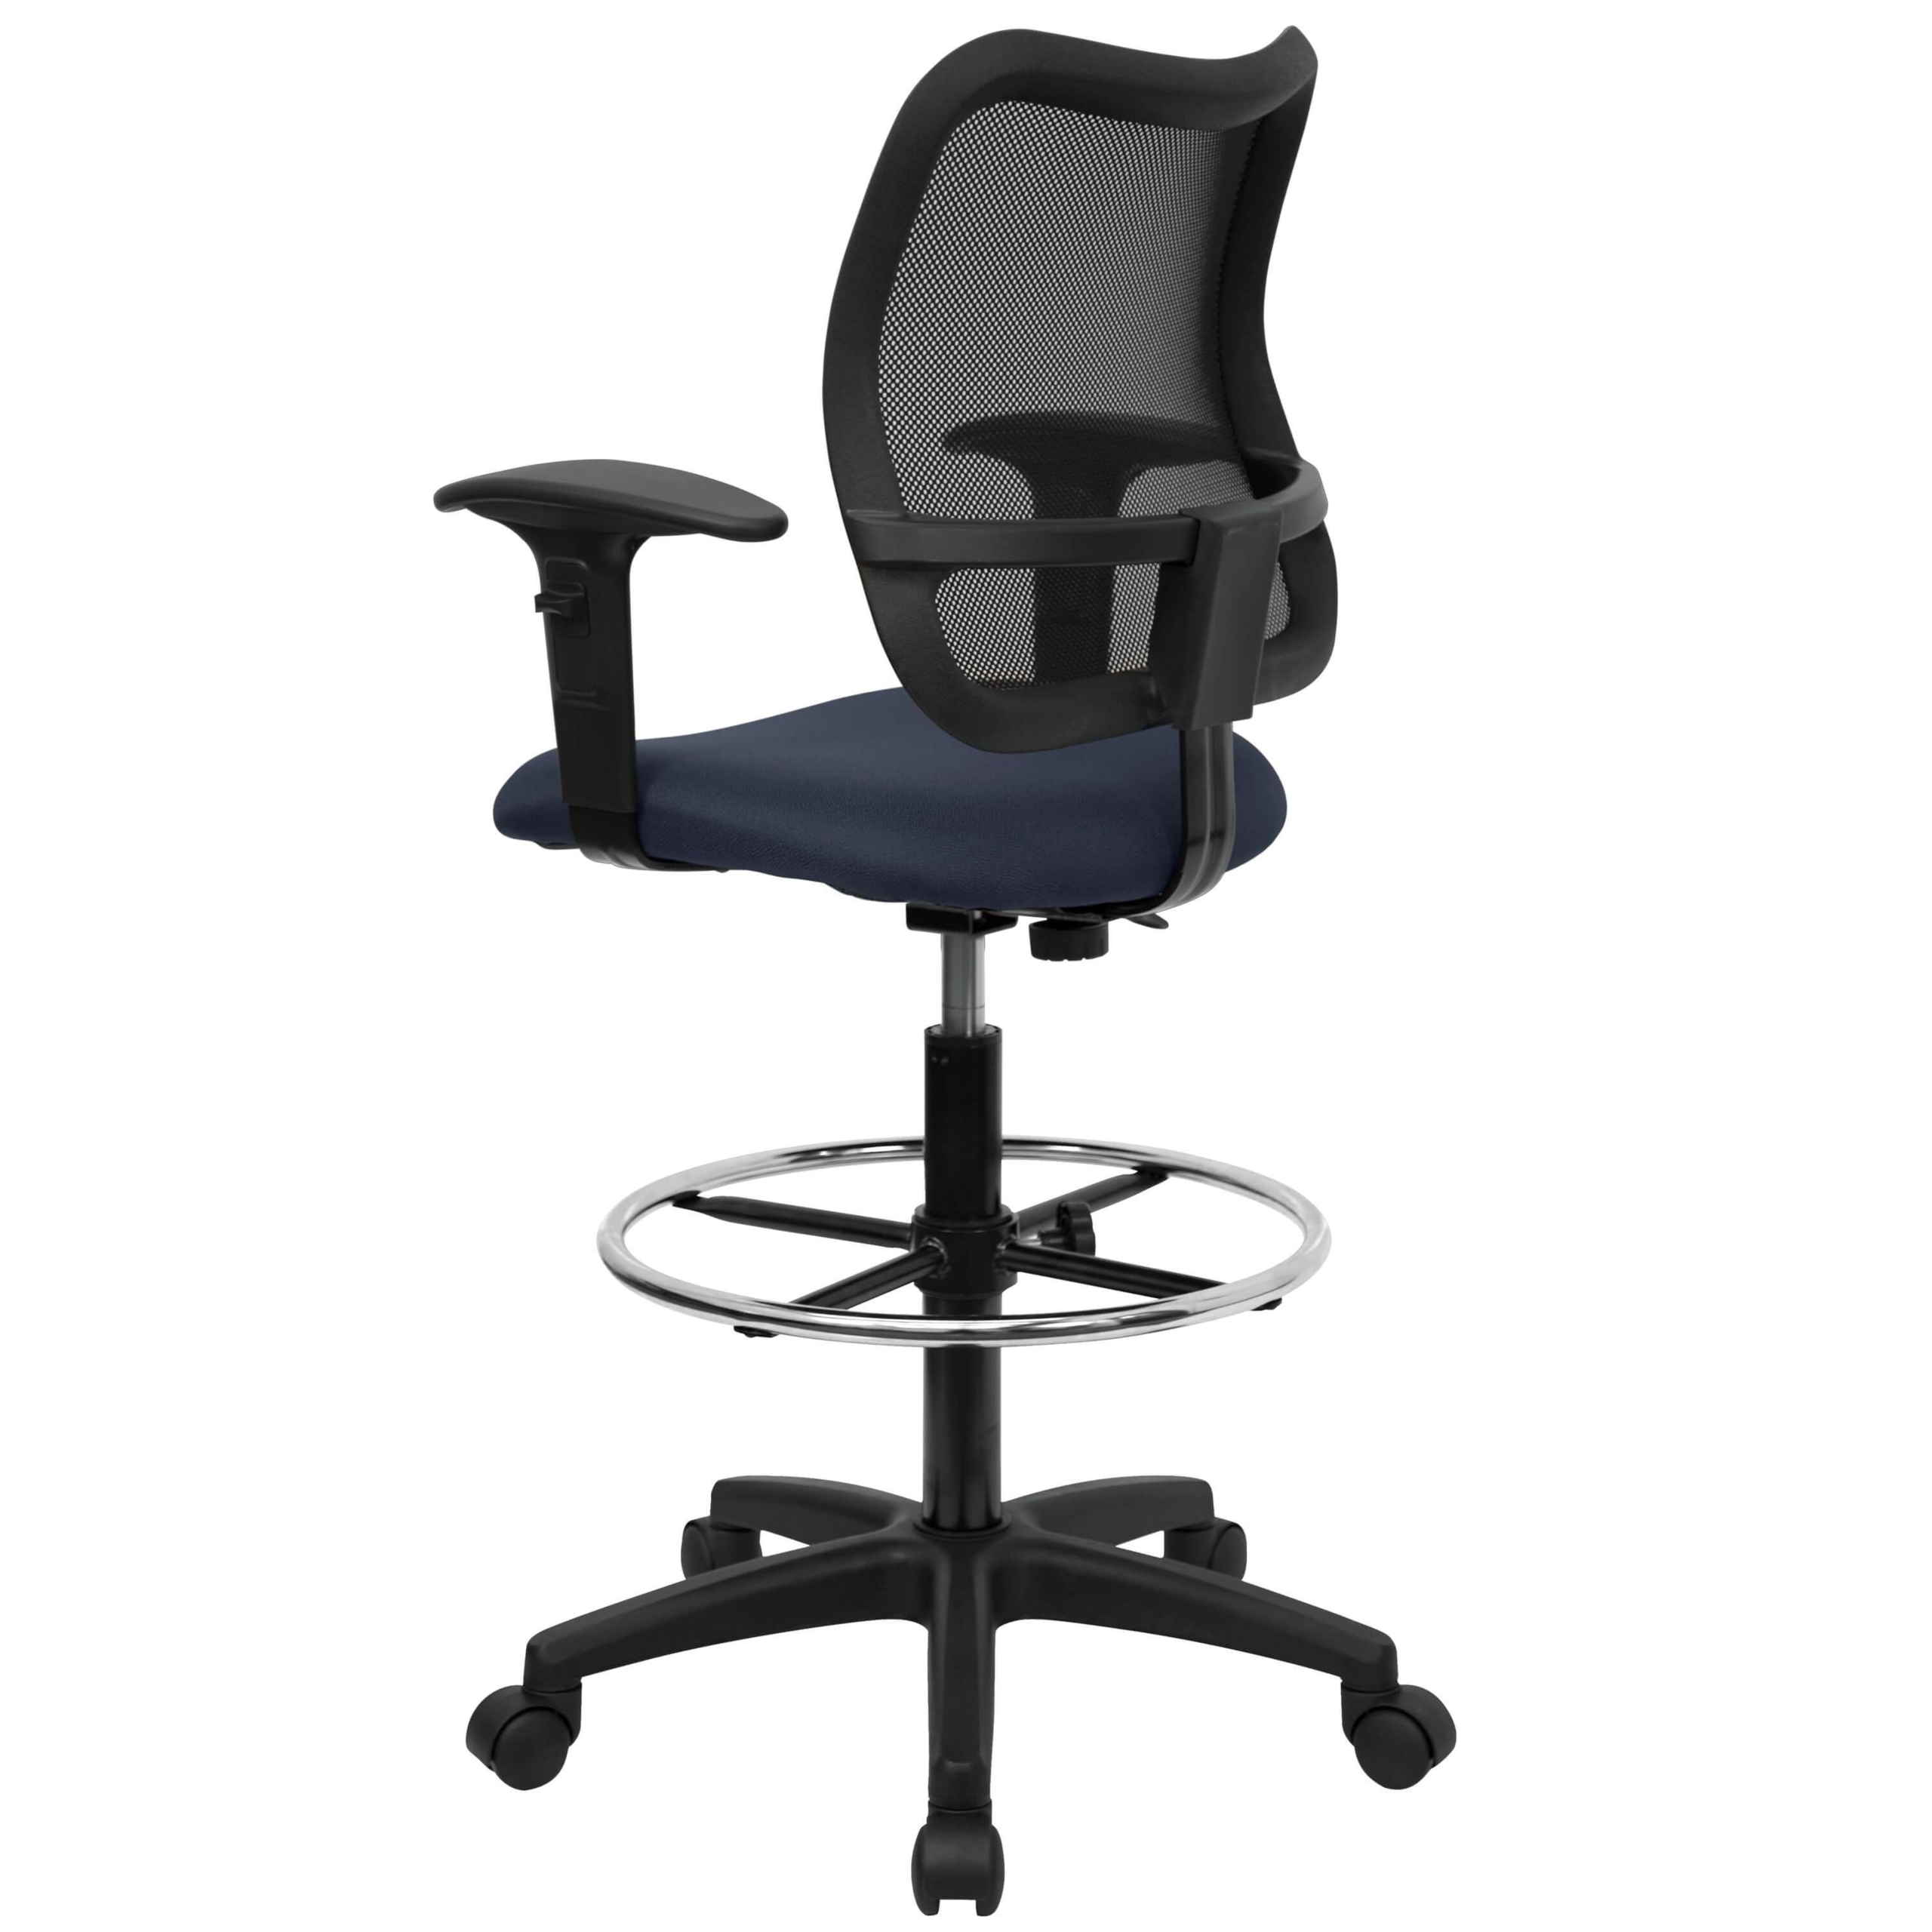 Ergonomic adjustable drafting stool